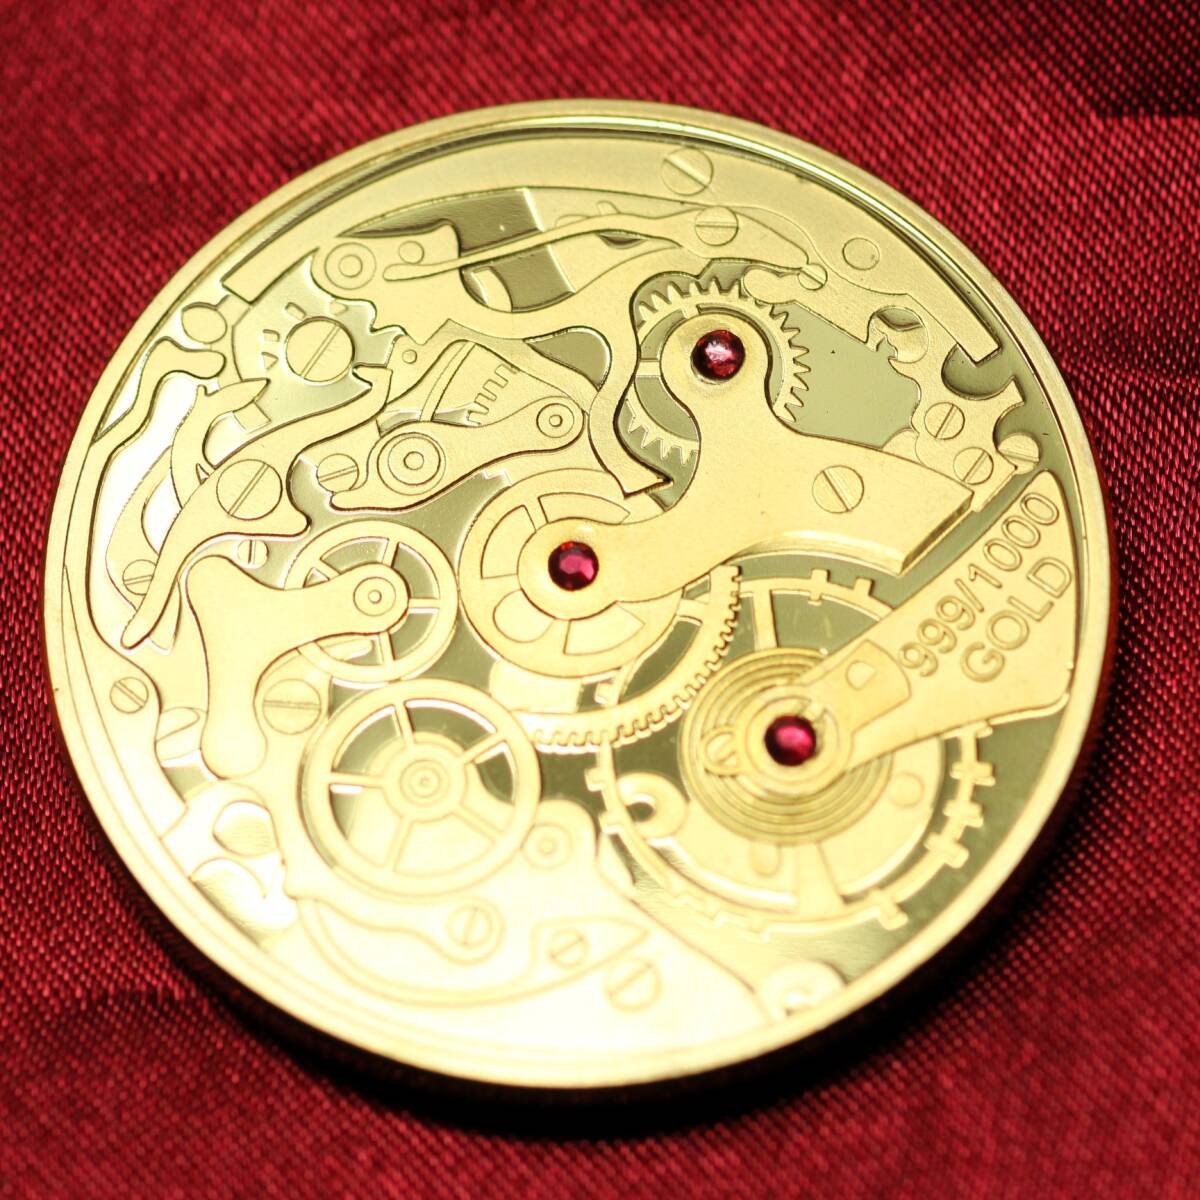 機械式時計 ムーブメント 石付き 金貨 記念メダル 美品 メダル 金 ゴールド 24KGP コイン レプリカ_画像4